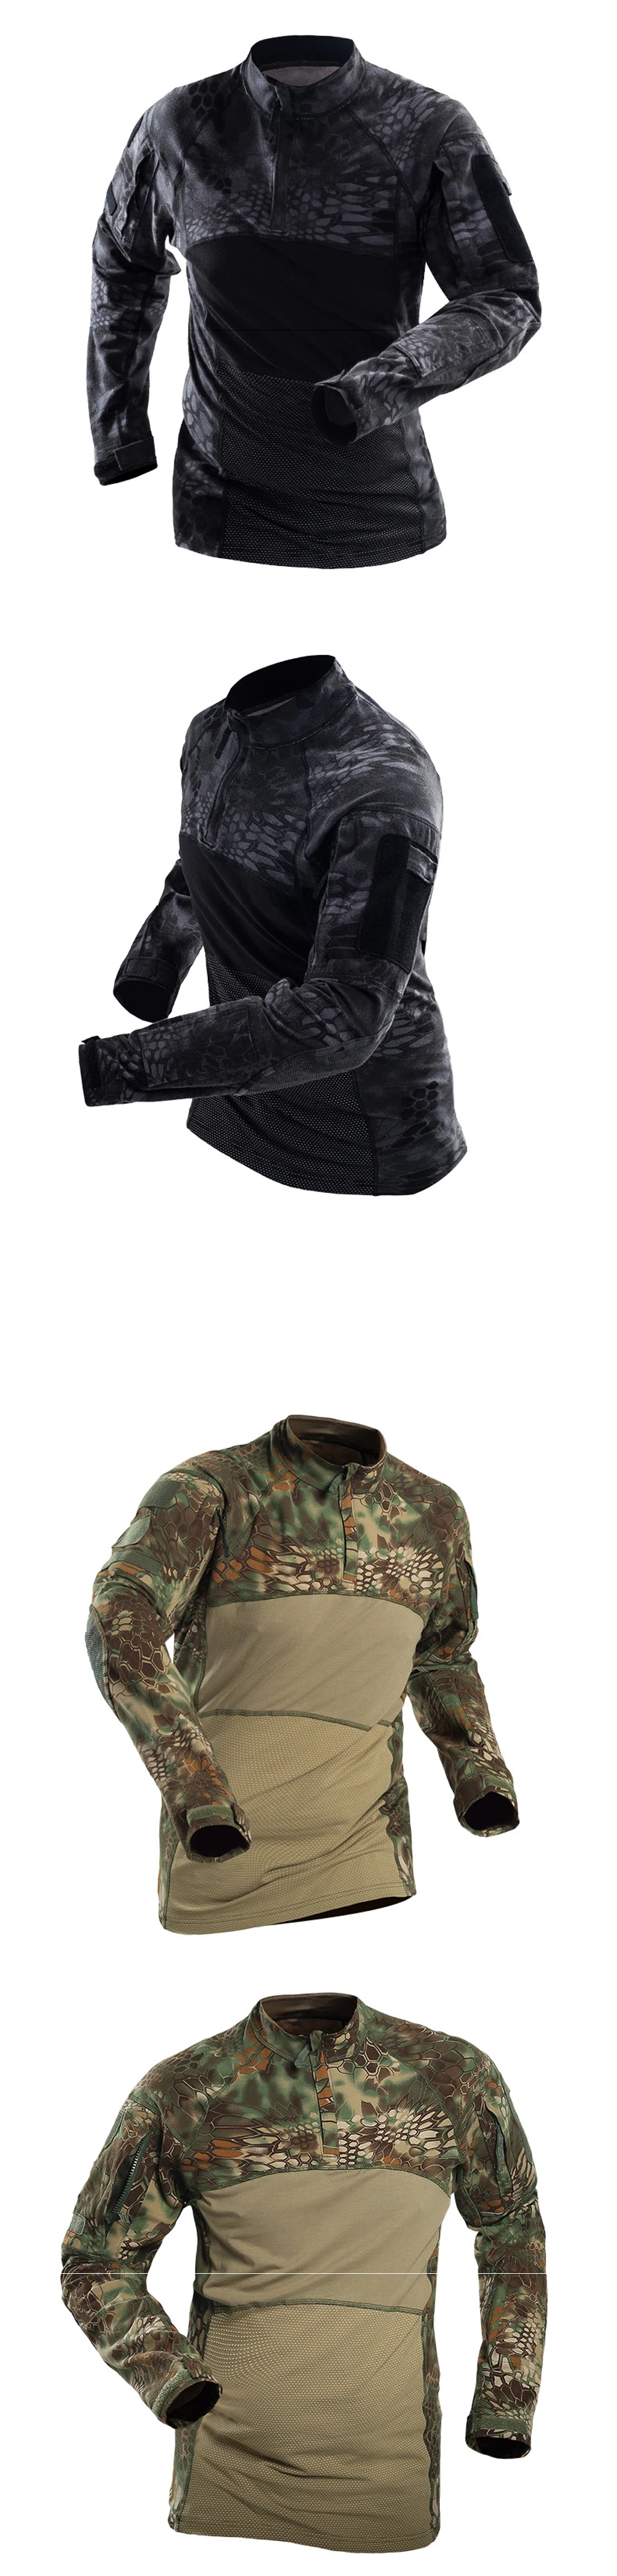 Тактическая Униформа для мужчин страйкбол военная одежда камуфляж спецназ костюмы Пейнтбол армейская боевая рубашка+ брюки карго без подкладки